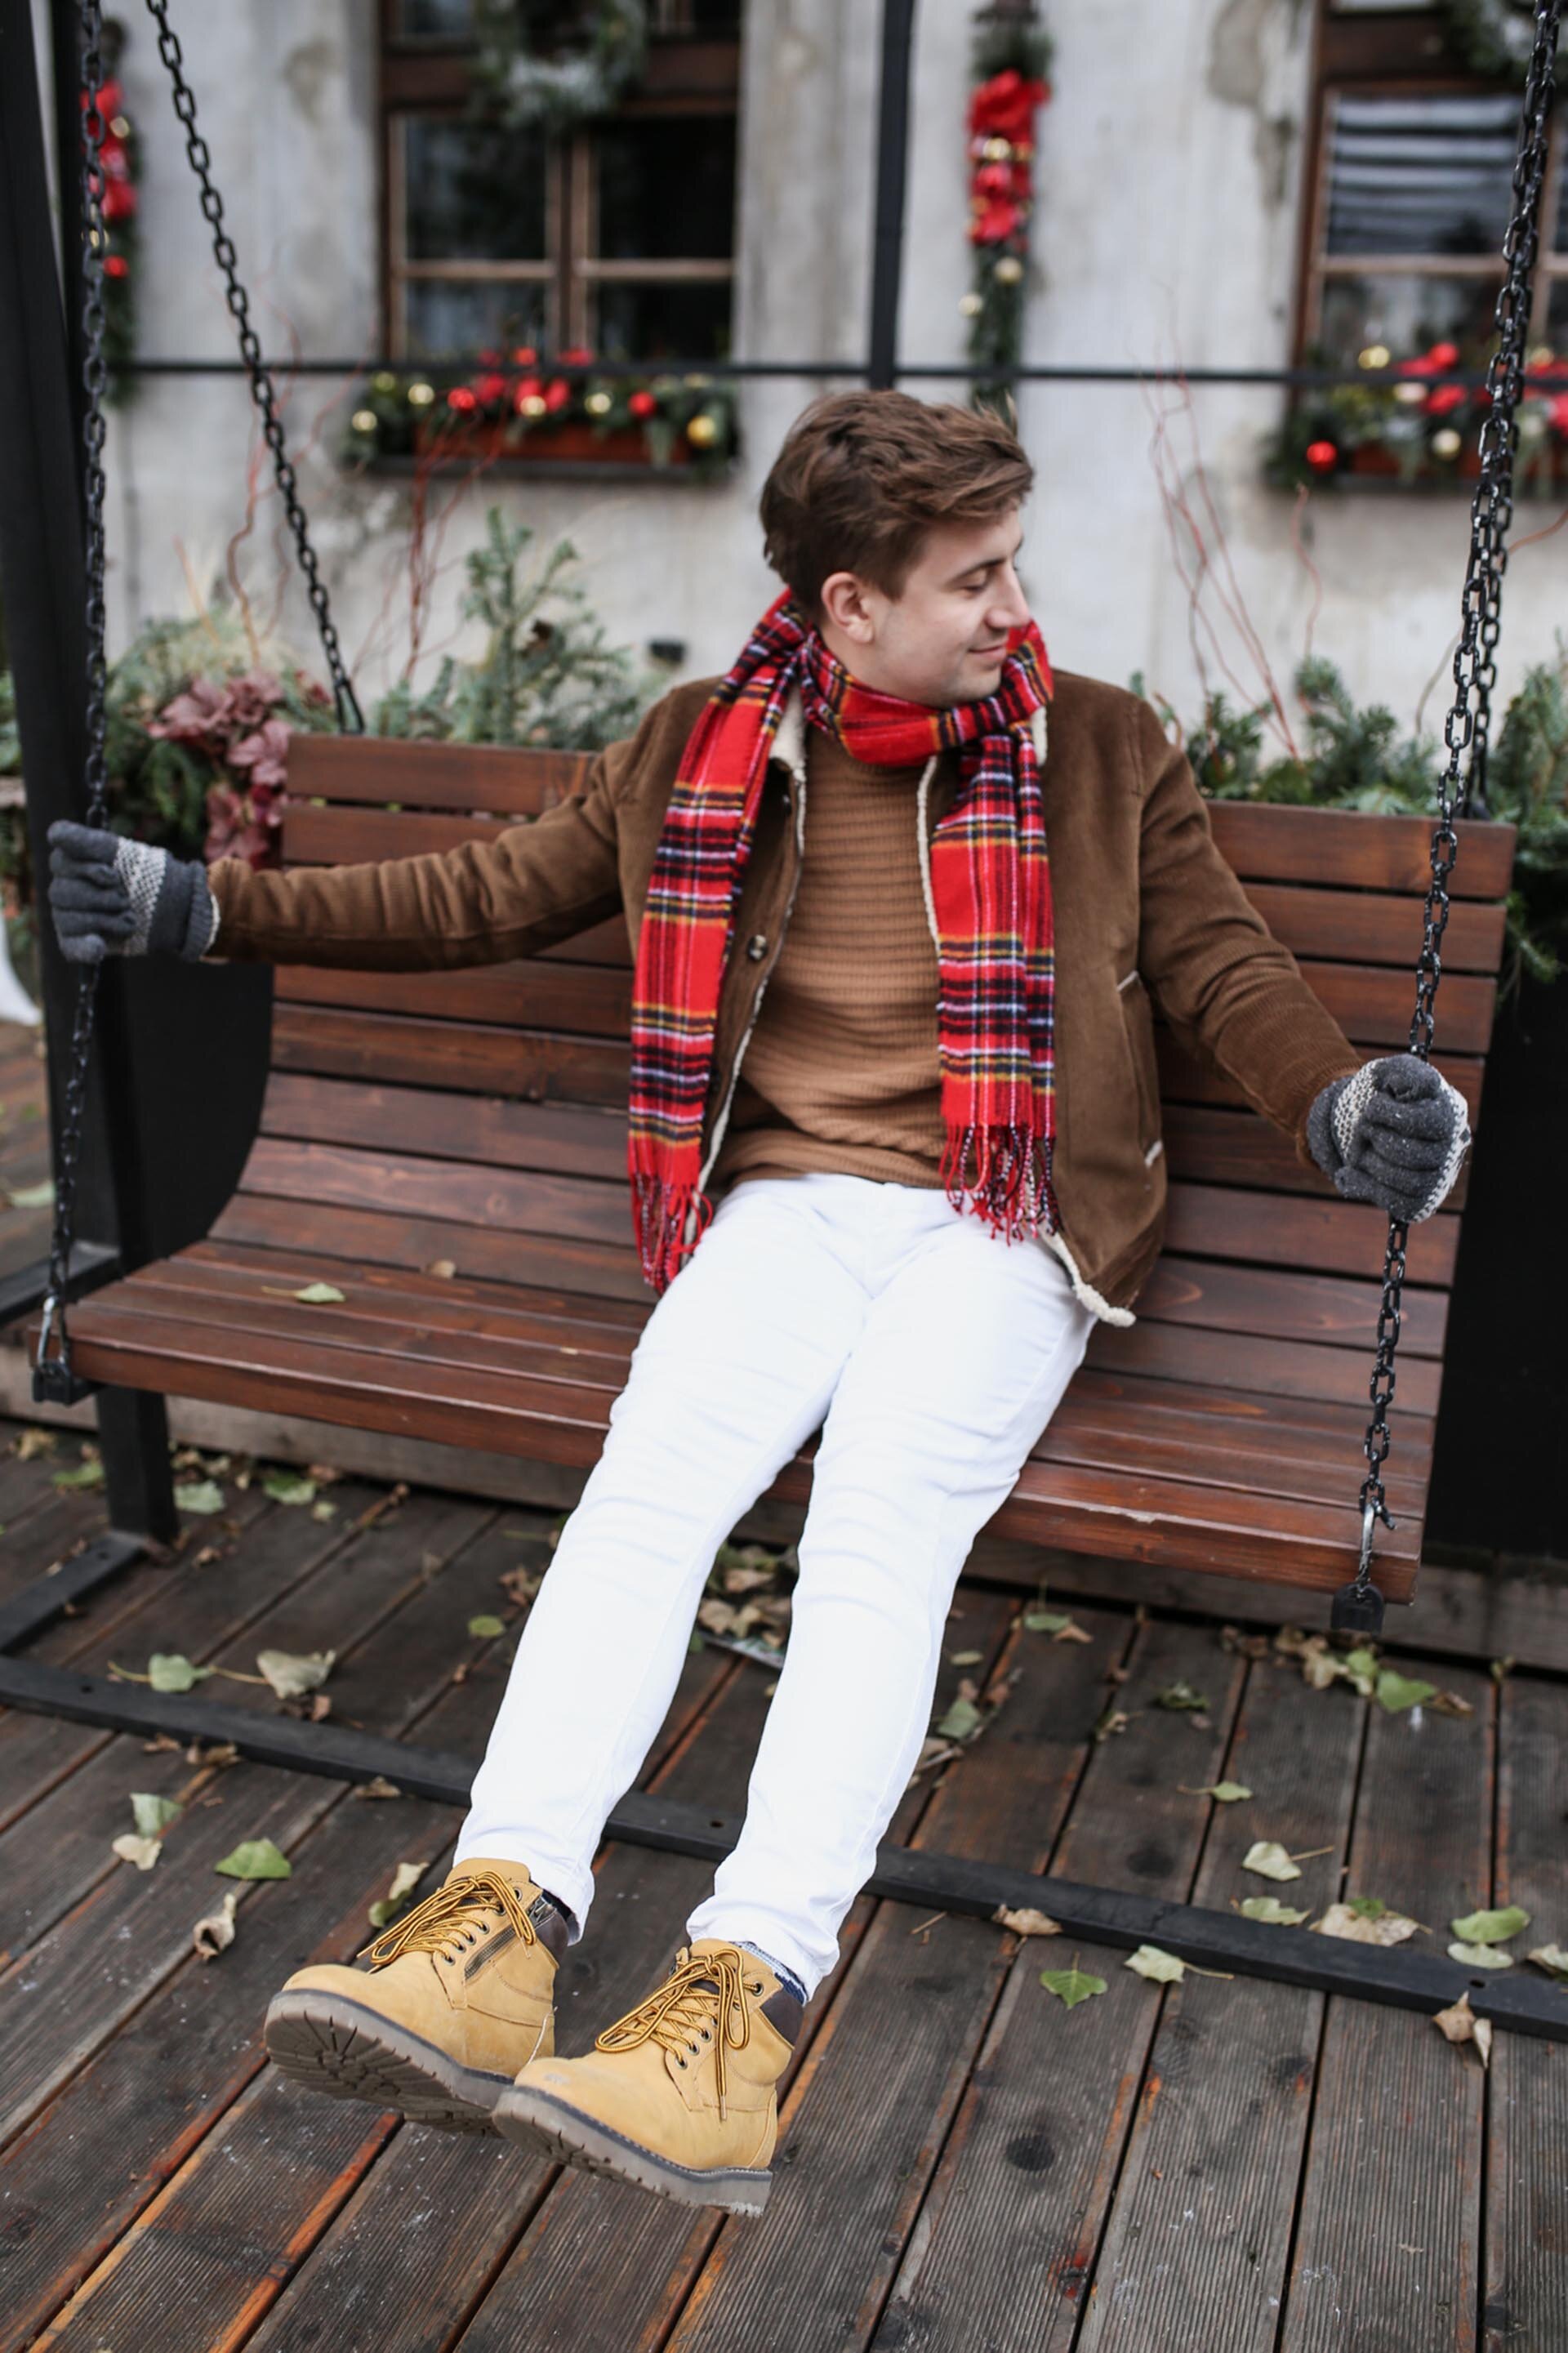 Jak ubrać się zimą żeby nie zmarznąć? Moda męska, Blog o modzie męskiej, GMALE by Grzegorz Paliś, Miejski Casual 